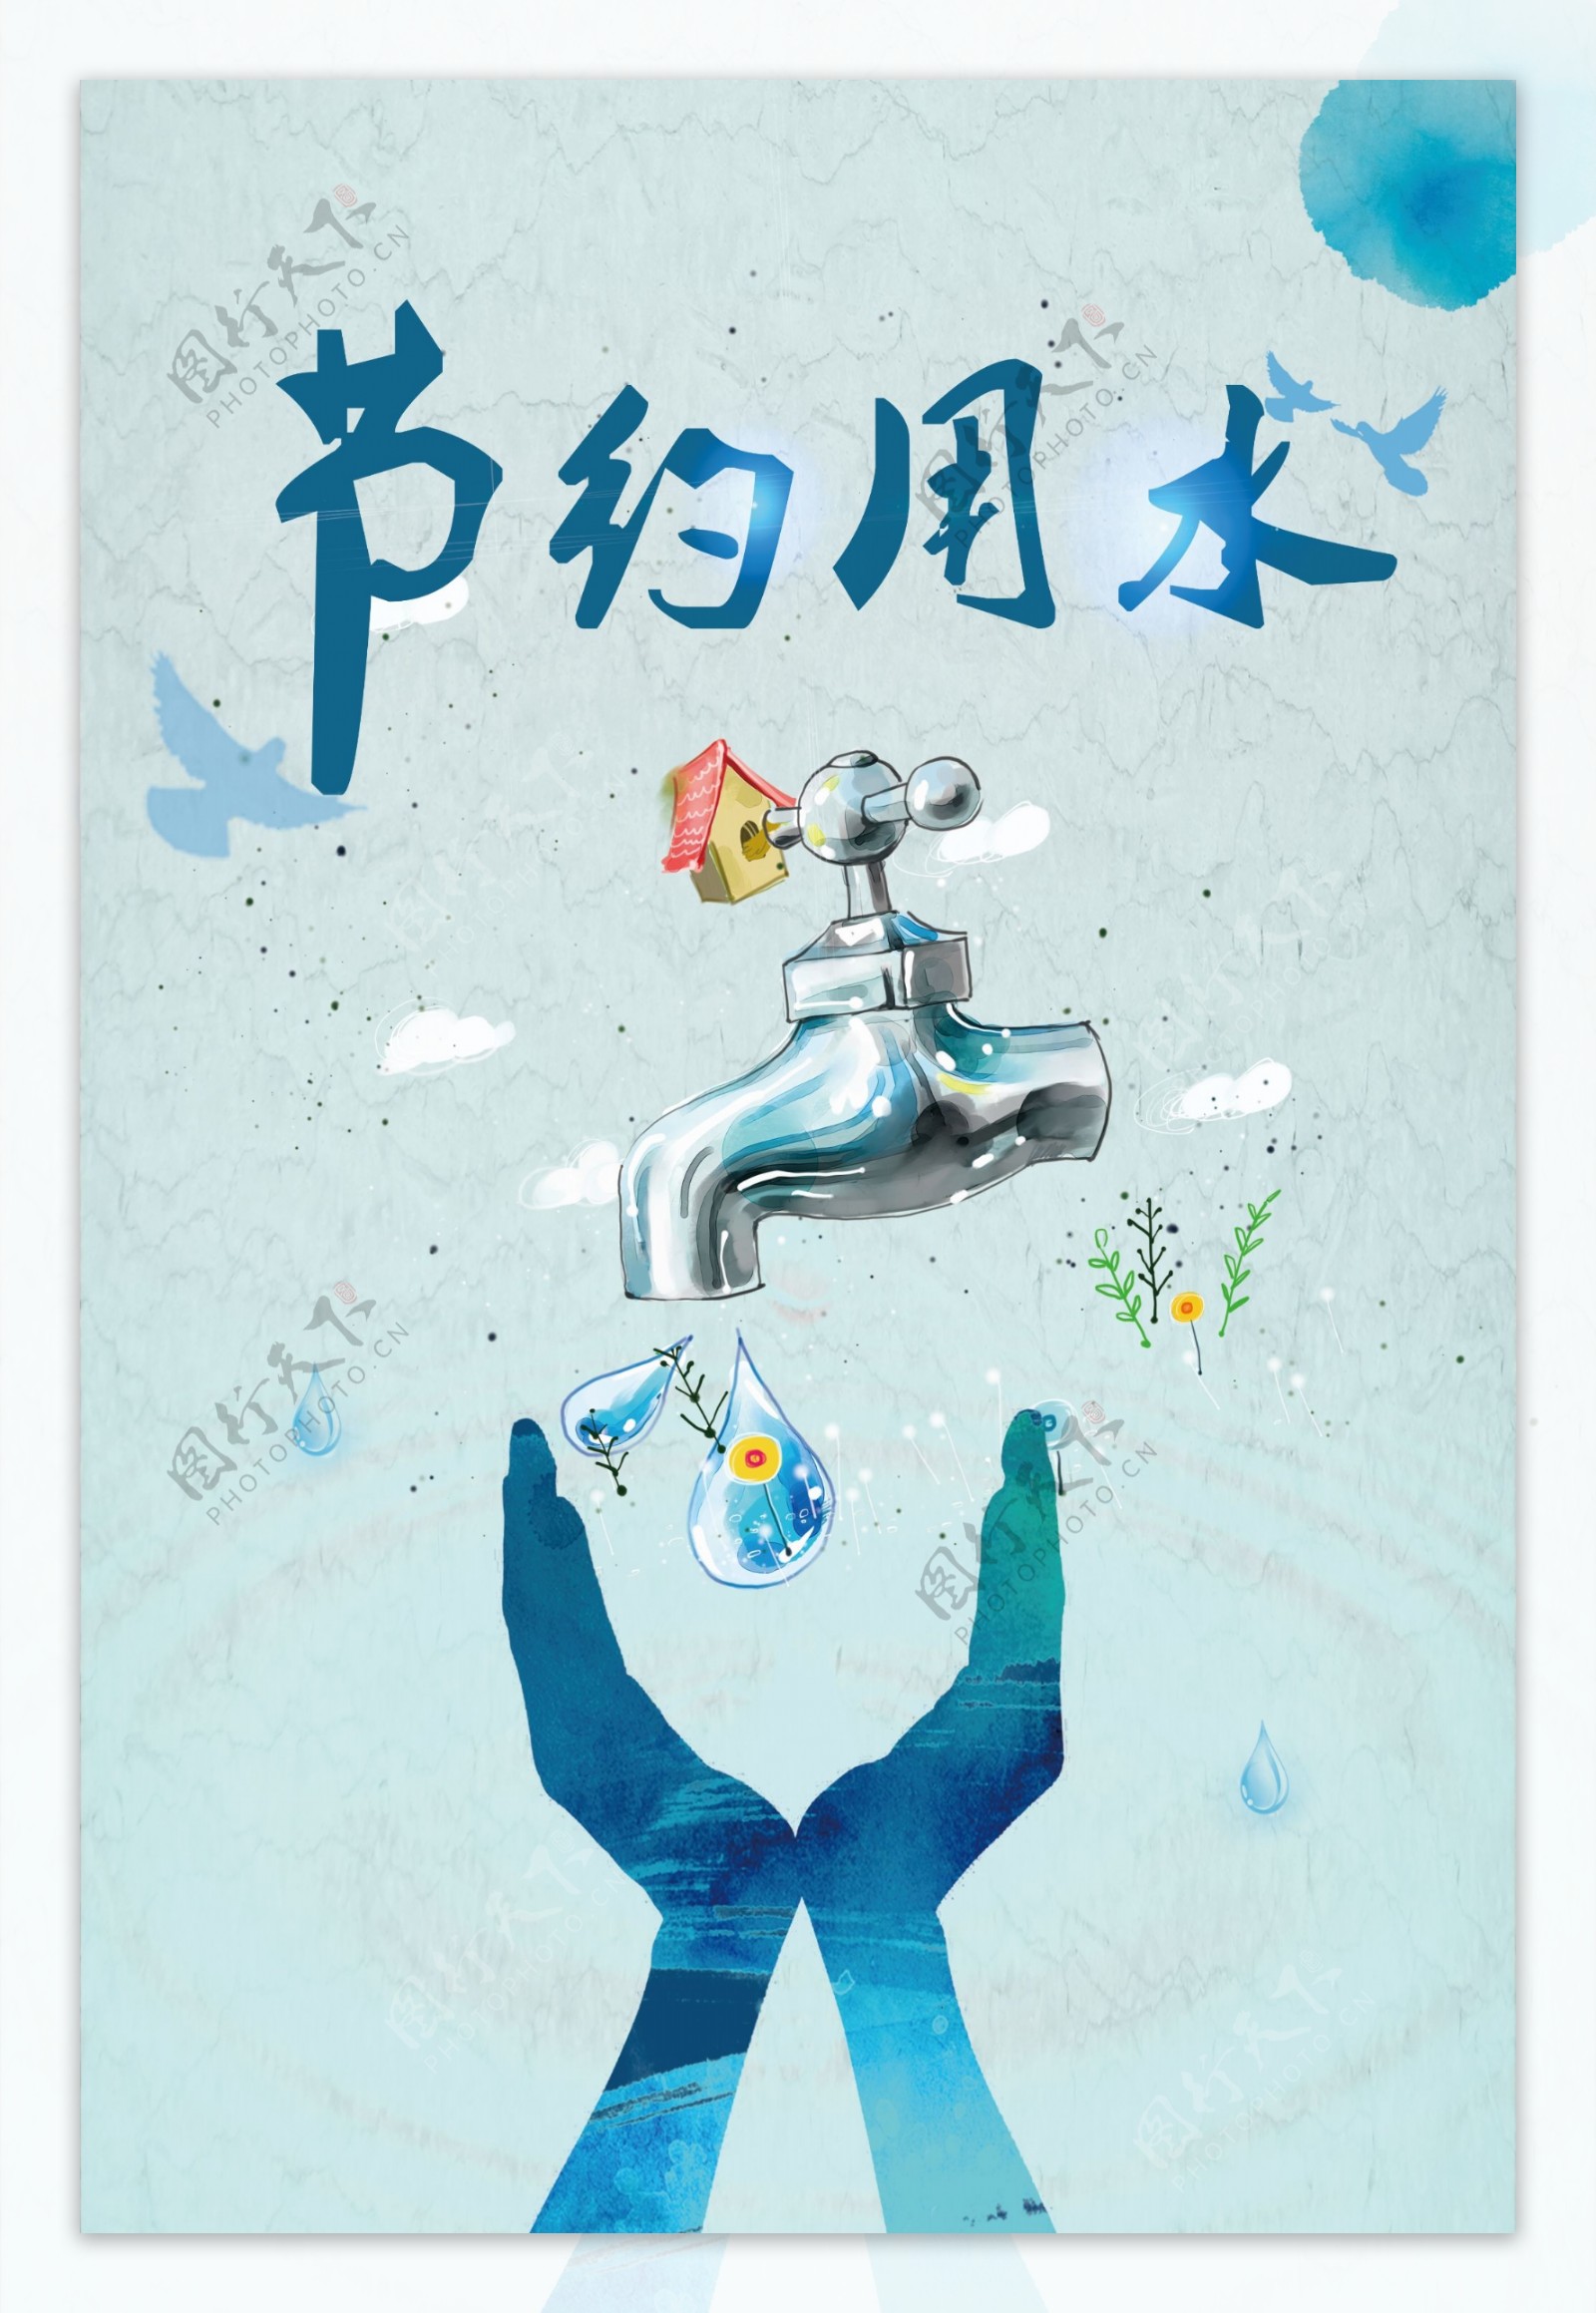 2017年简约创意节约用水宣传海报设计